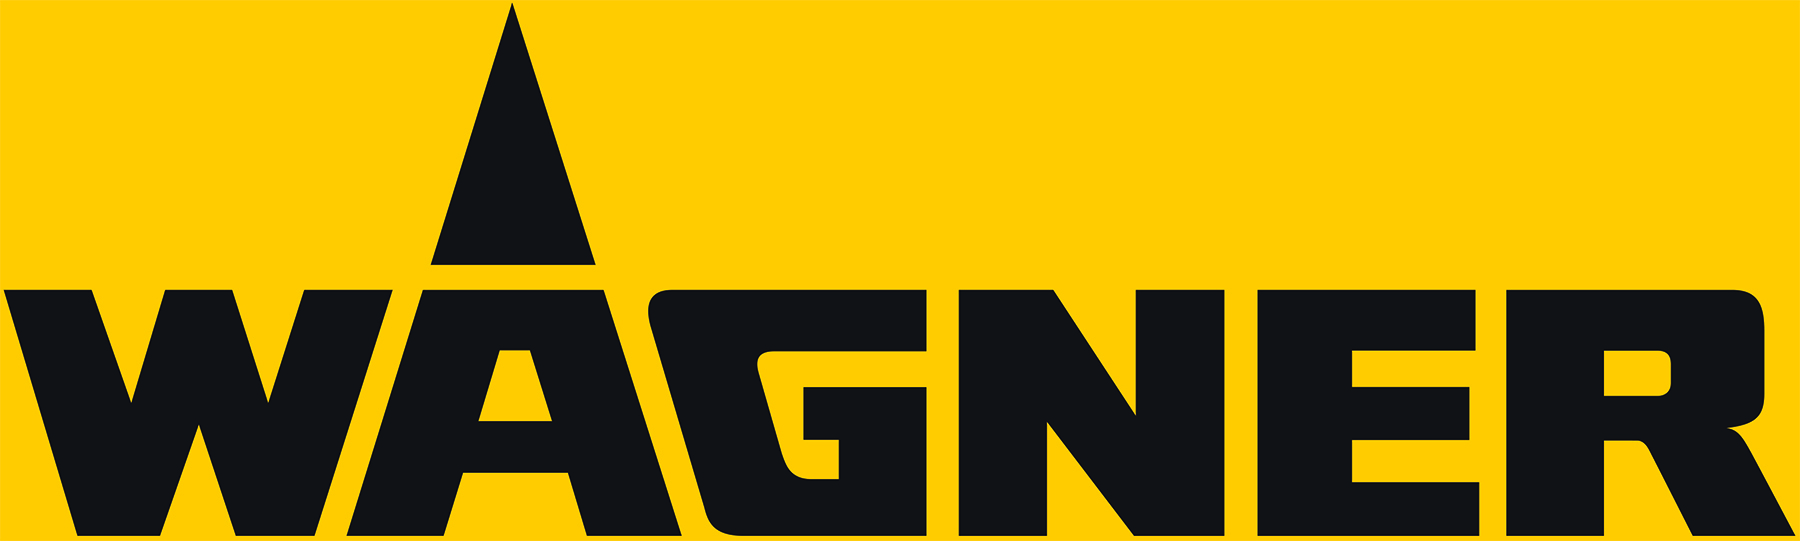 Wagner_Logo